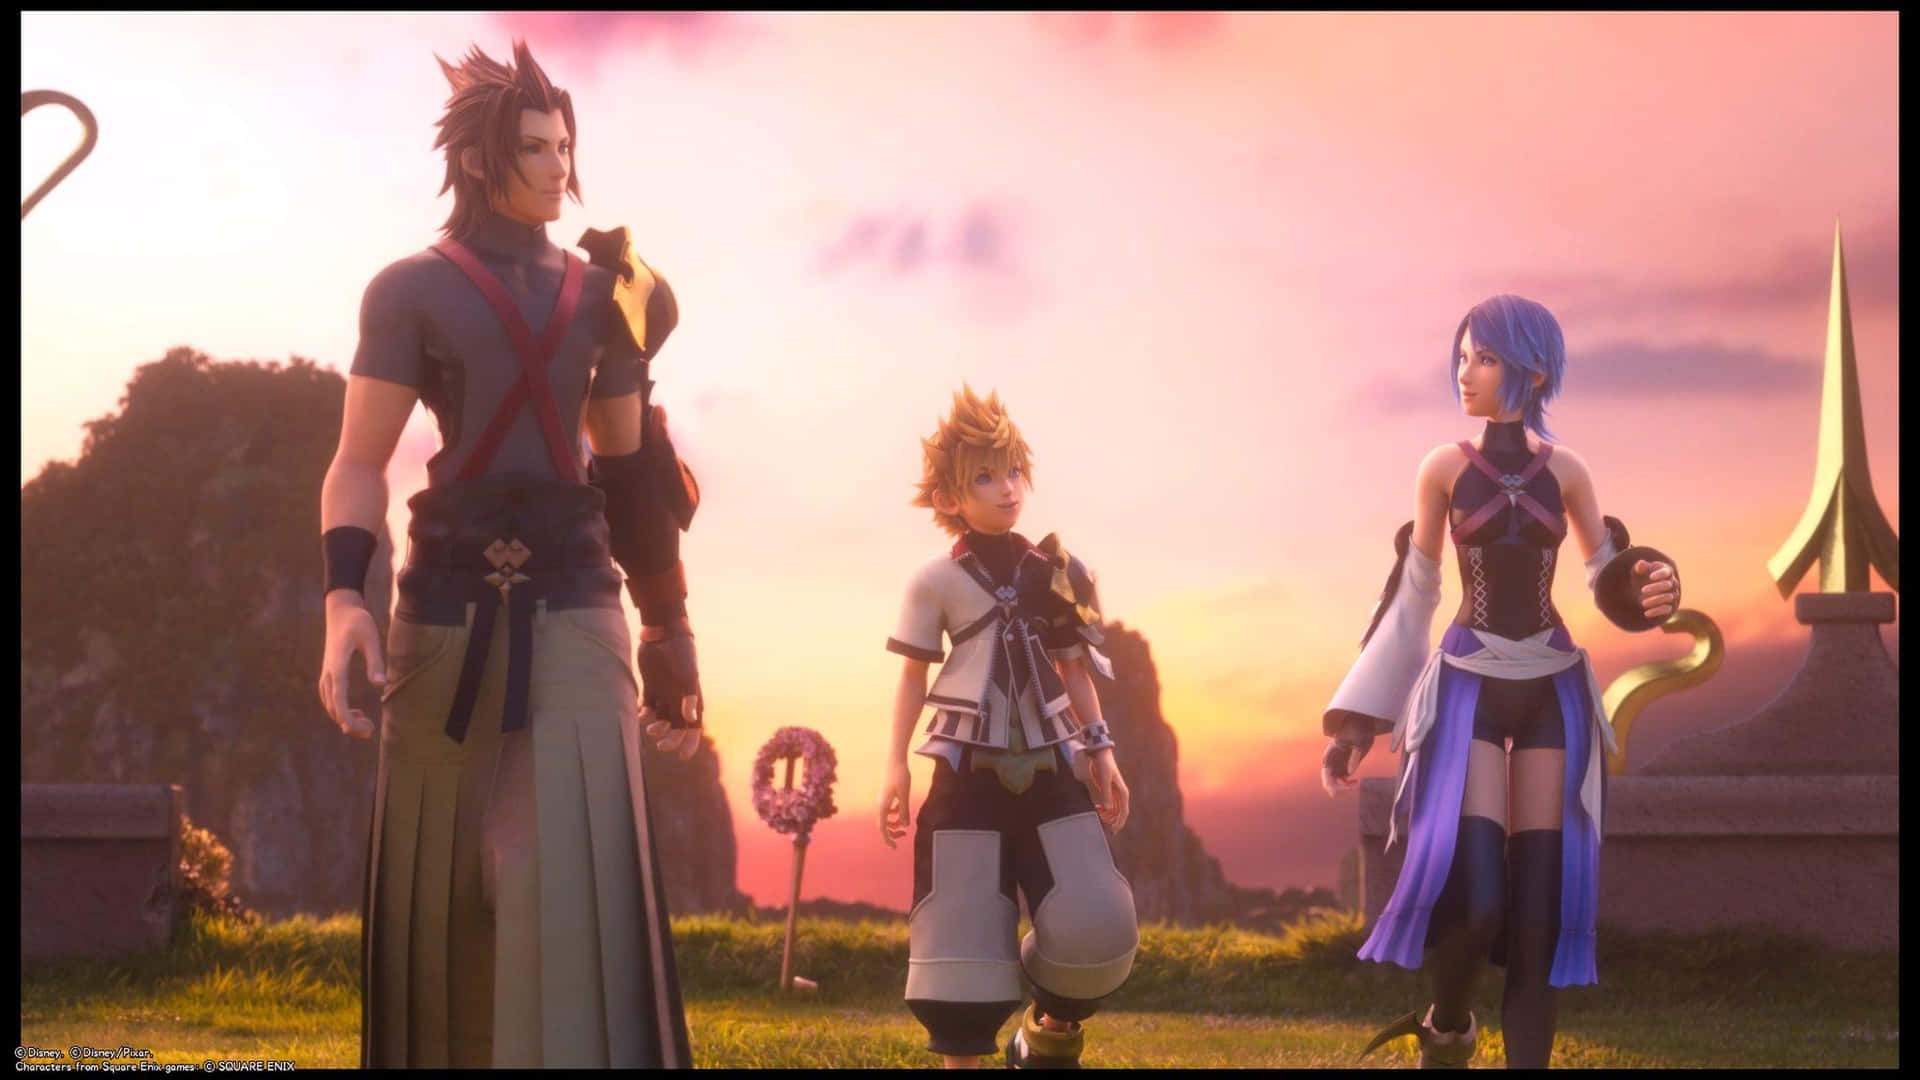 Kingdom Hearts Terra - Heroic Stance Wallpaper